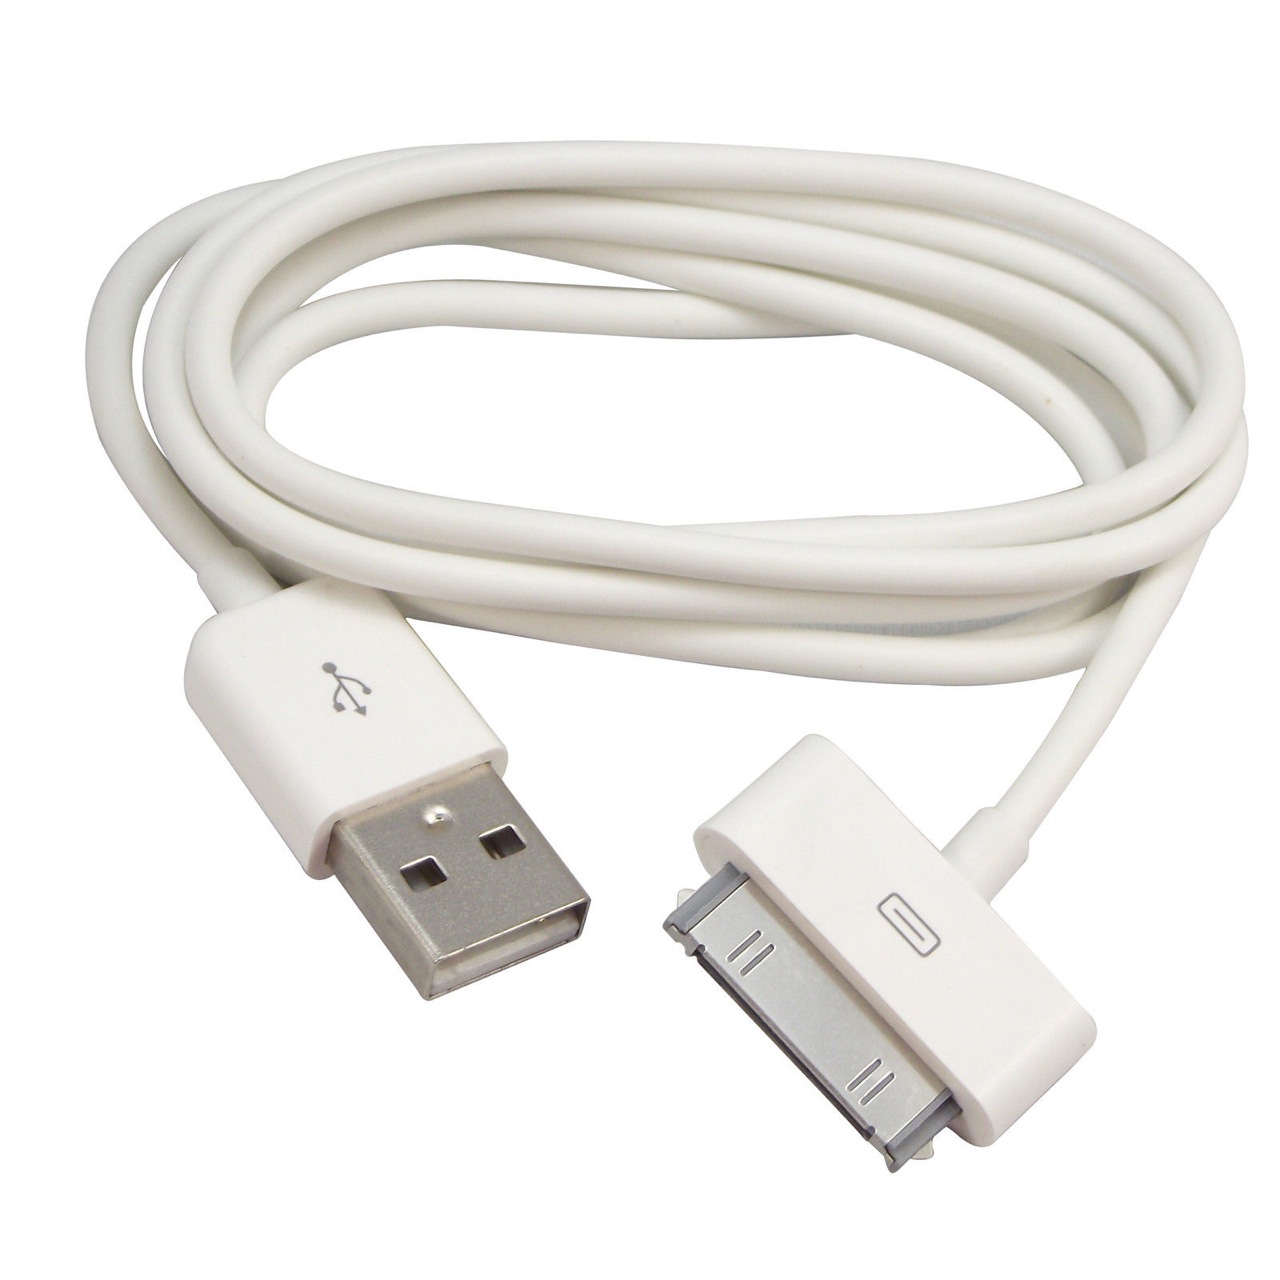 Вид USB-кабеля с 30-пиновым коннектором для подключения айфона к компьютеру